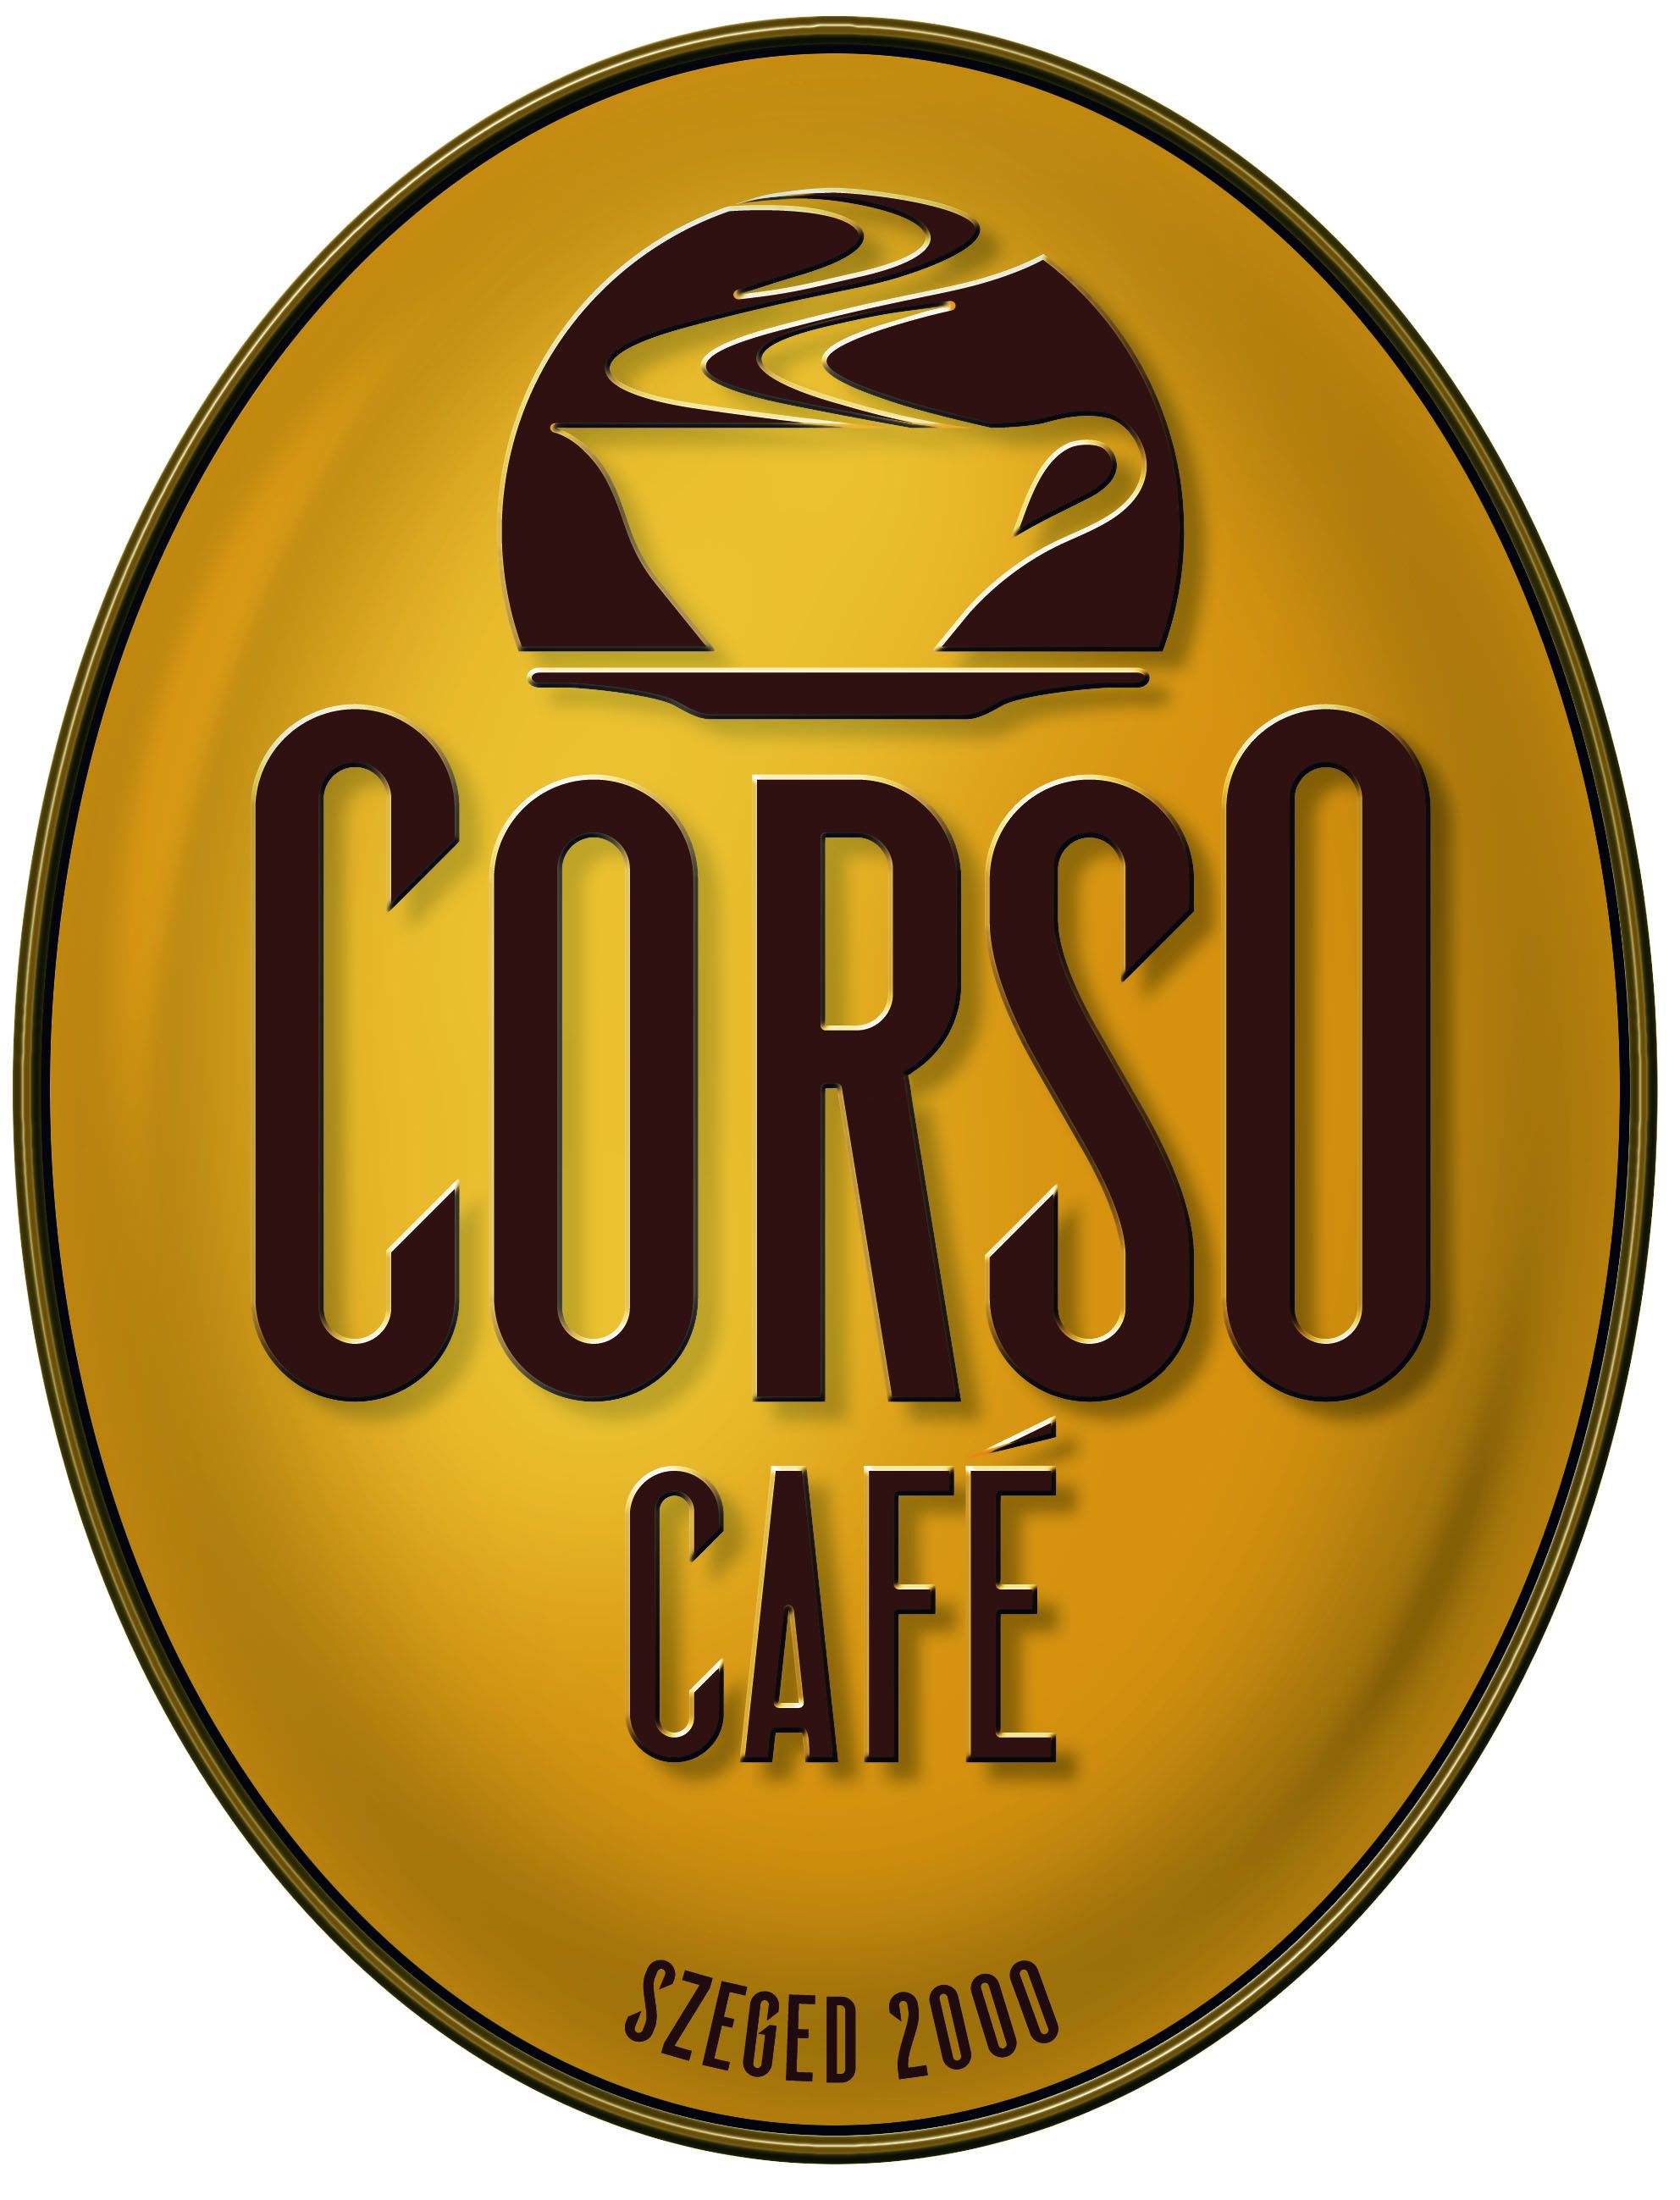 Corso Cafe